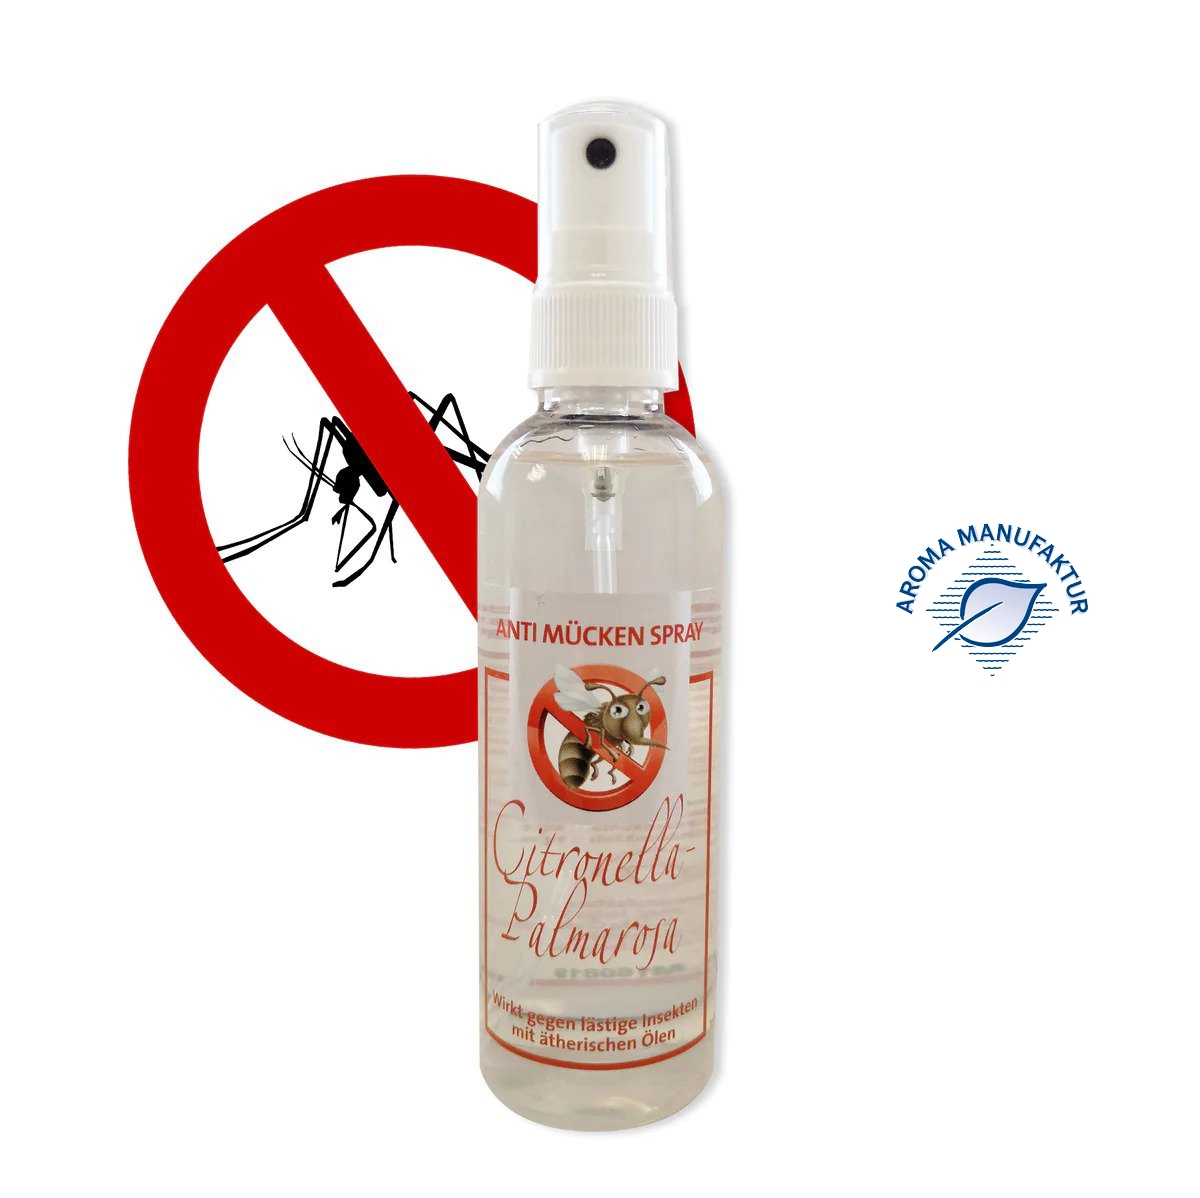 Anti-Mücken Spray aus ätherischen Ölen gegen Mücken